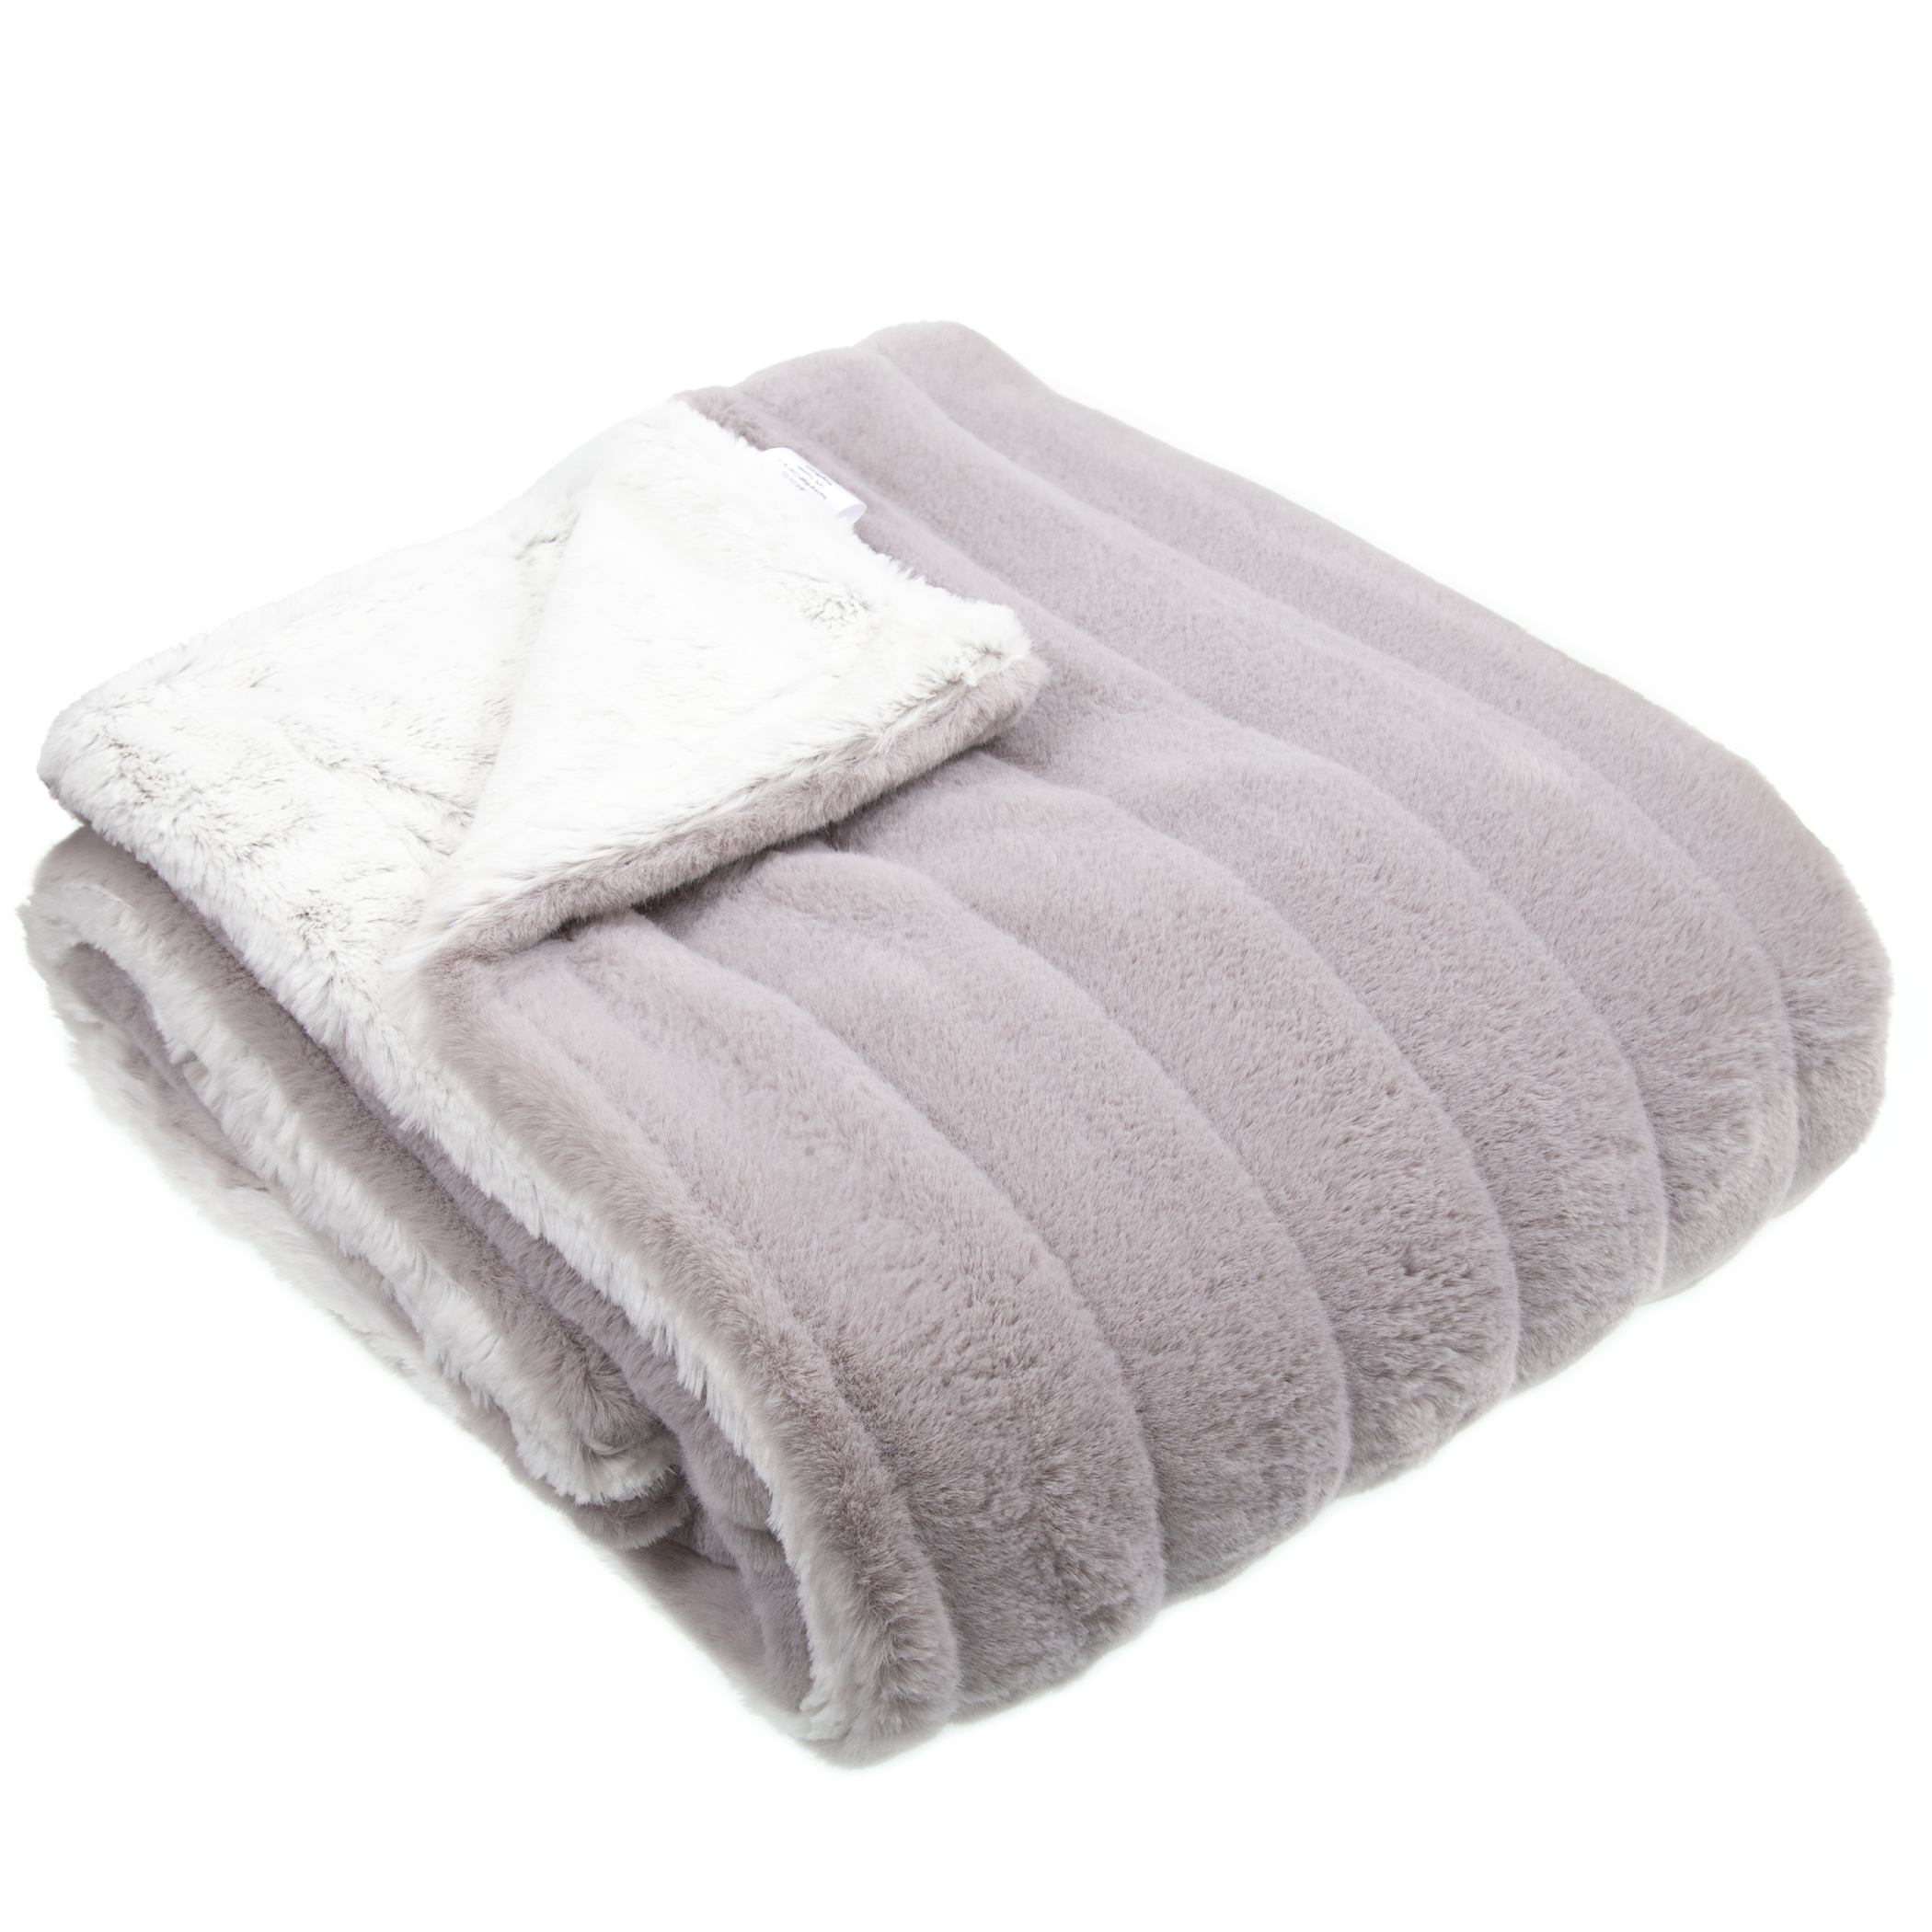 Luxe Plush Throw Blanket